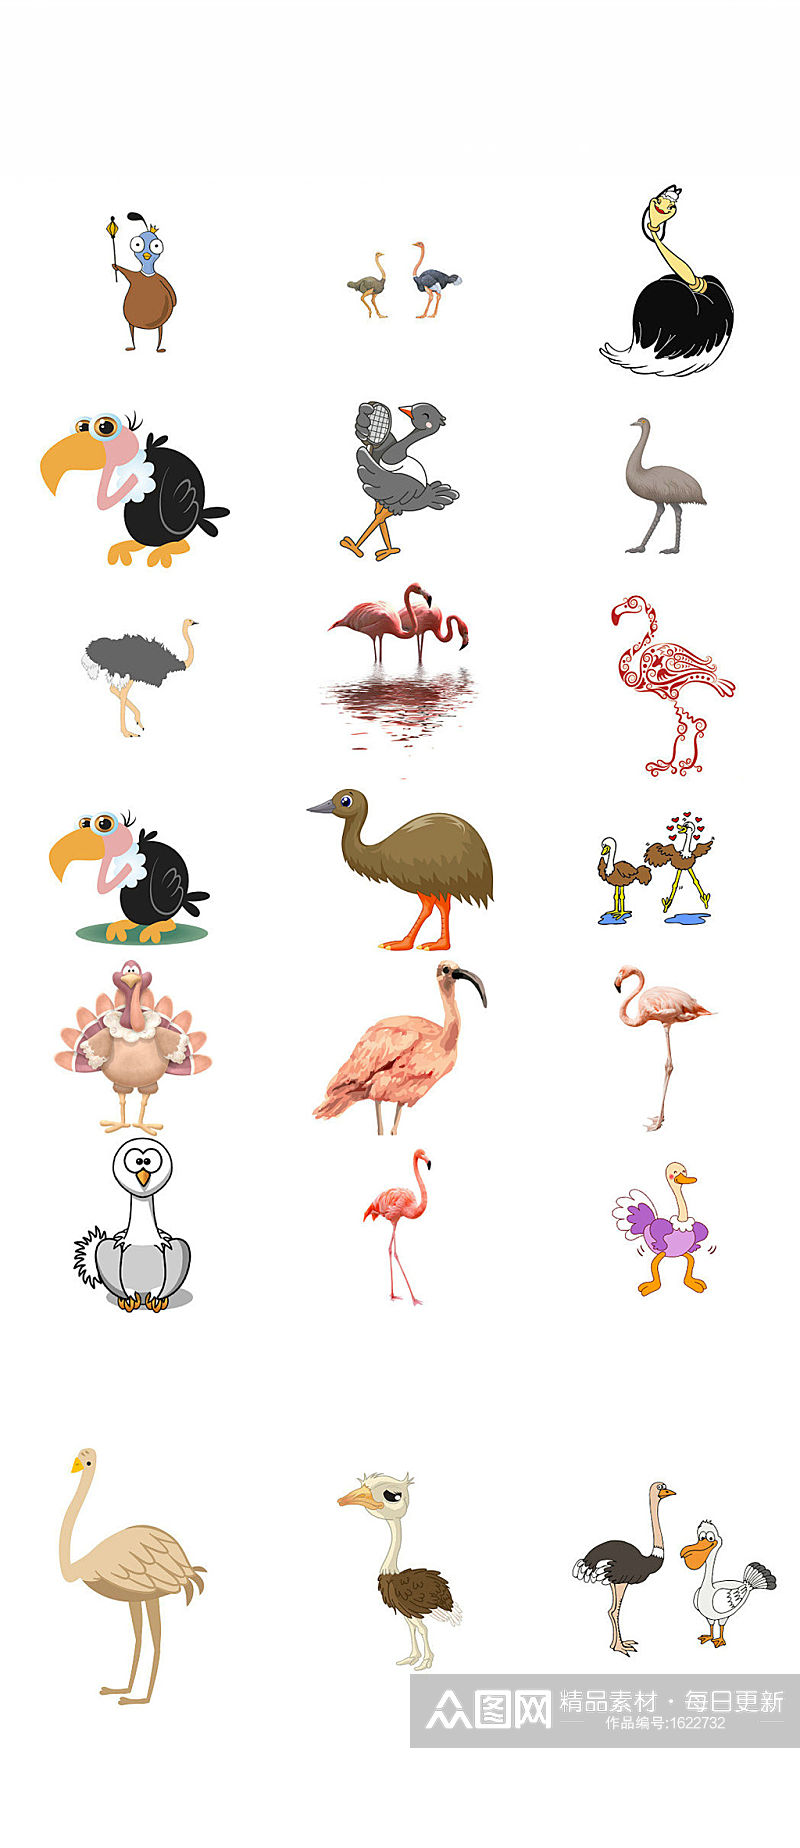 动物卡通鸵鸟形象设计素材素材